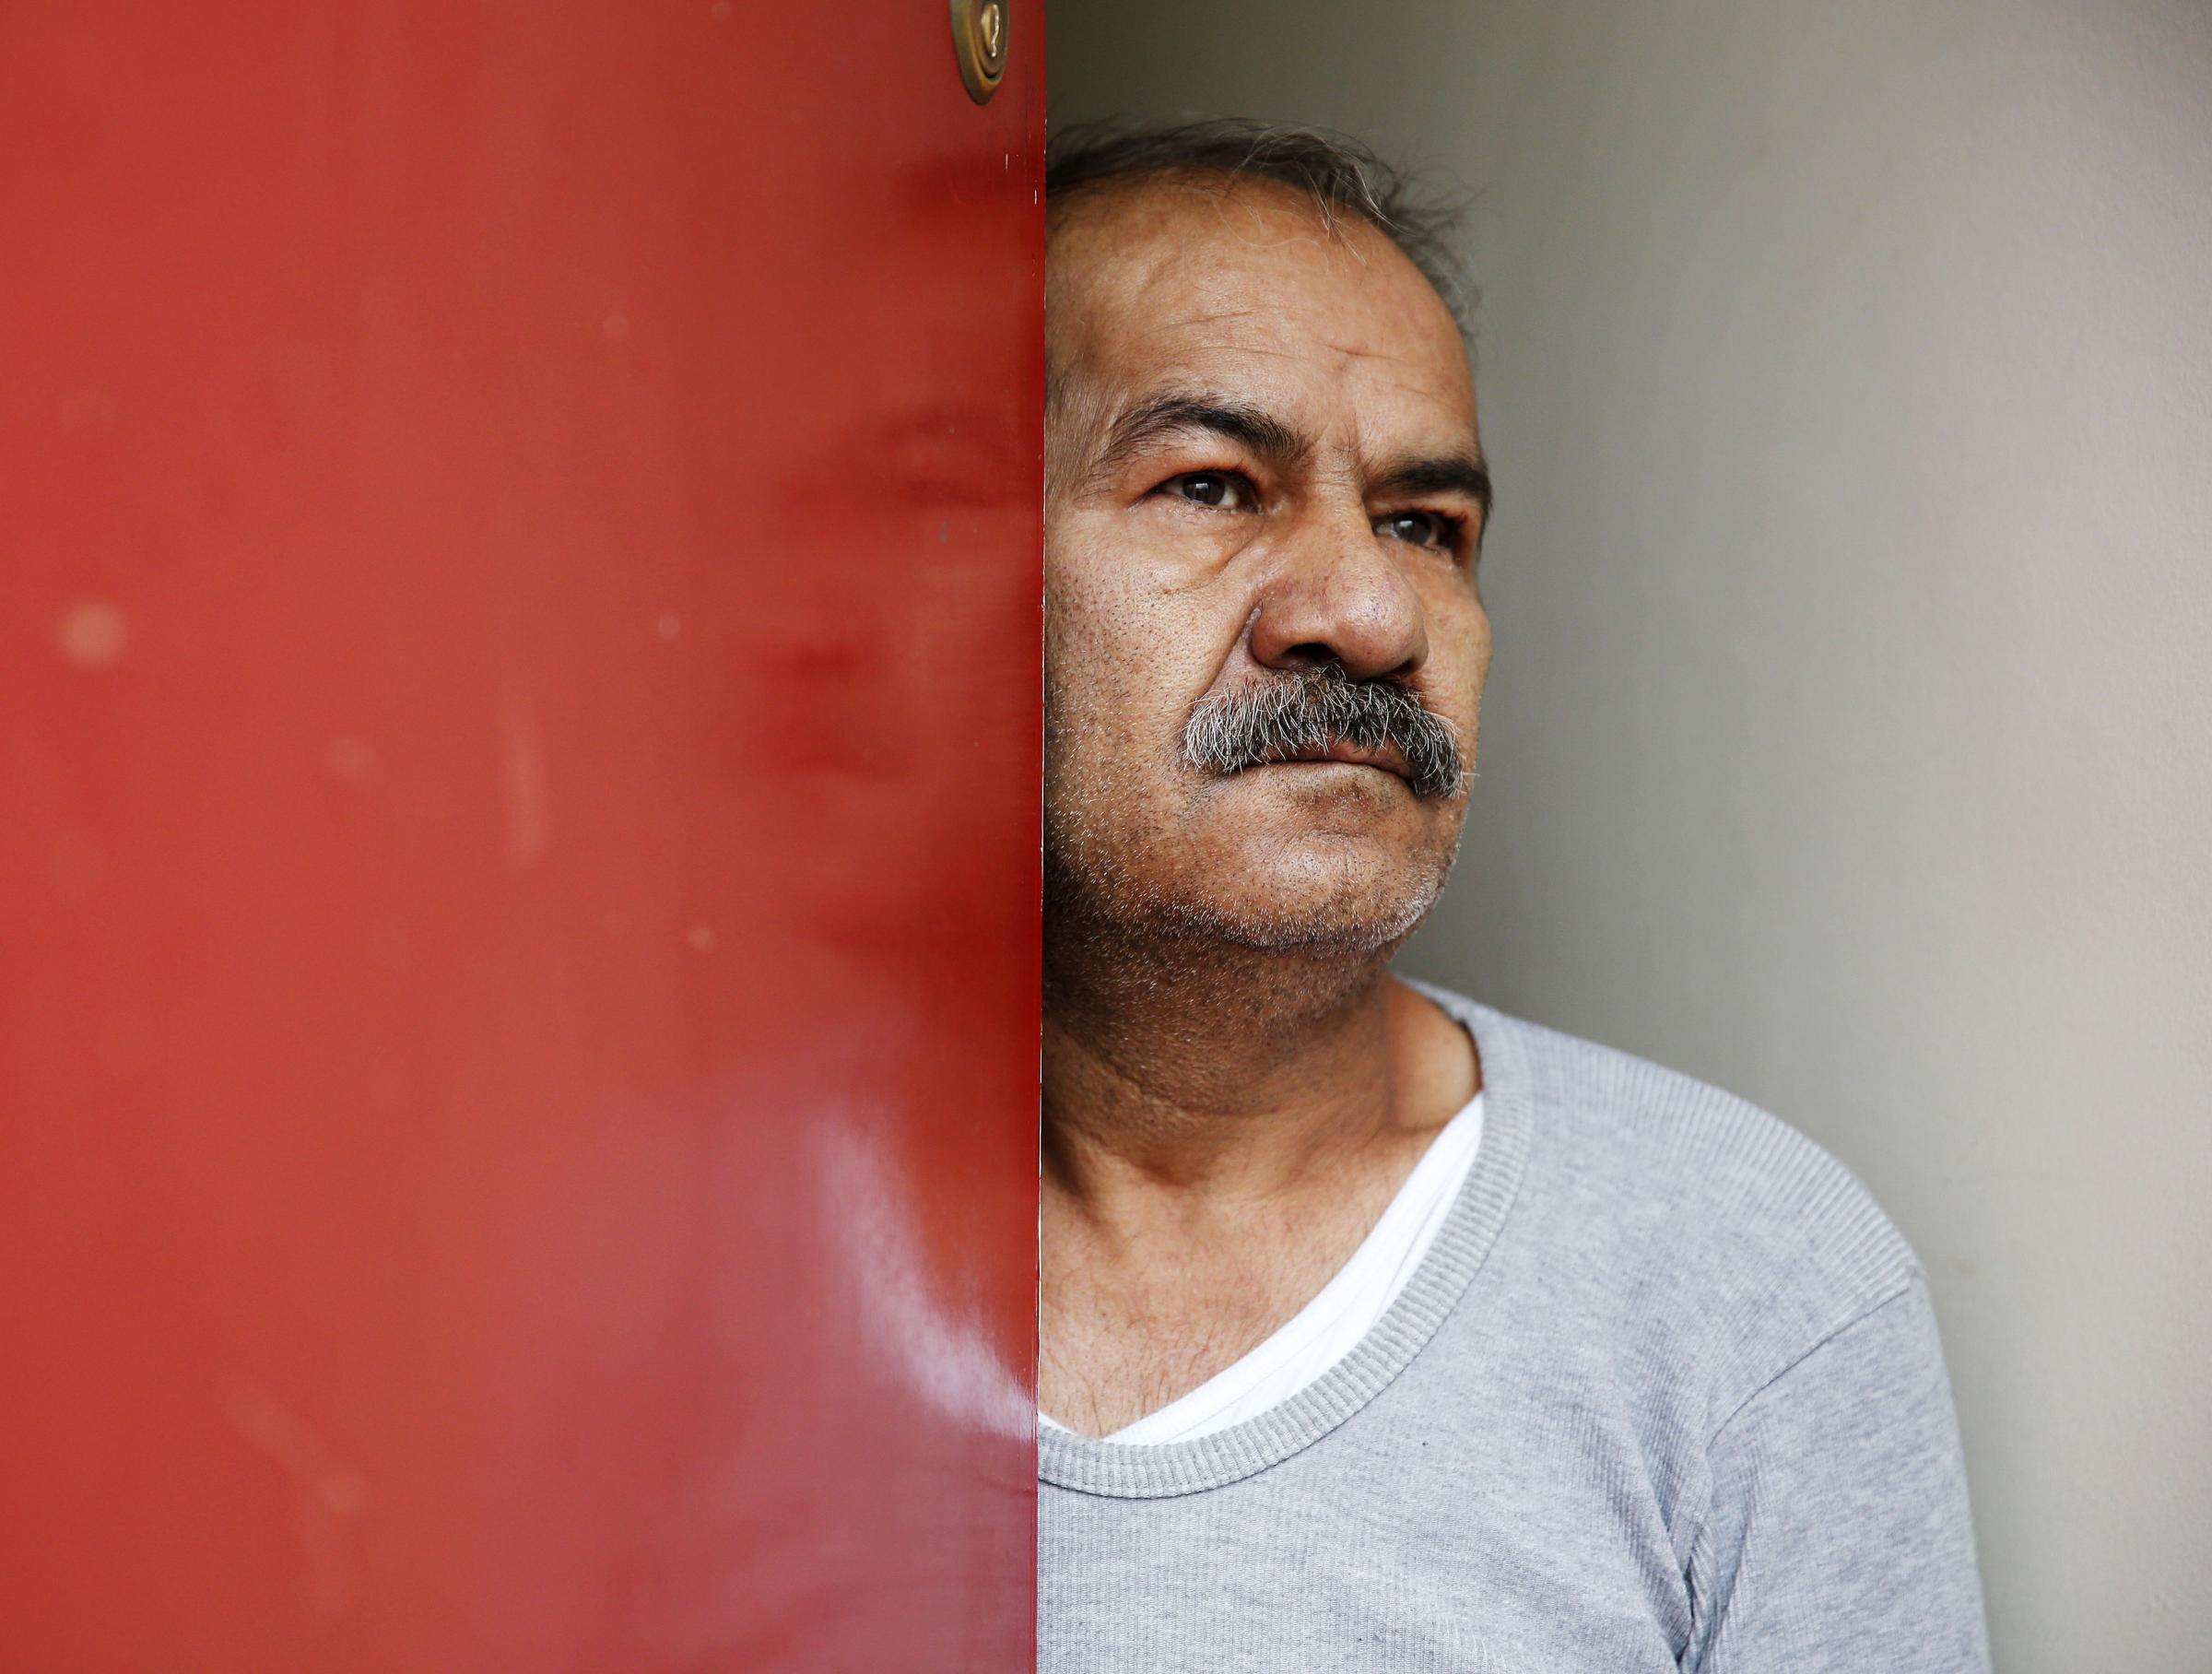 UK asylum-seekers: Red doors 'mark' us as abuse targets